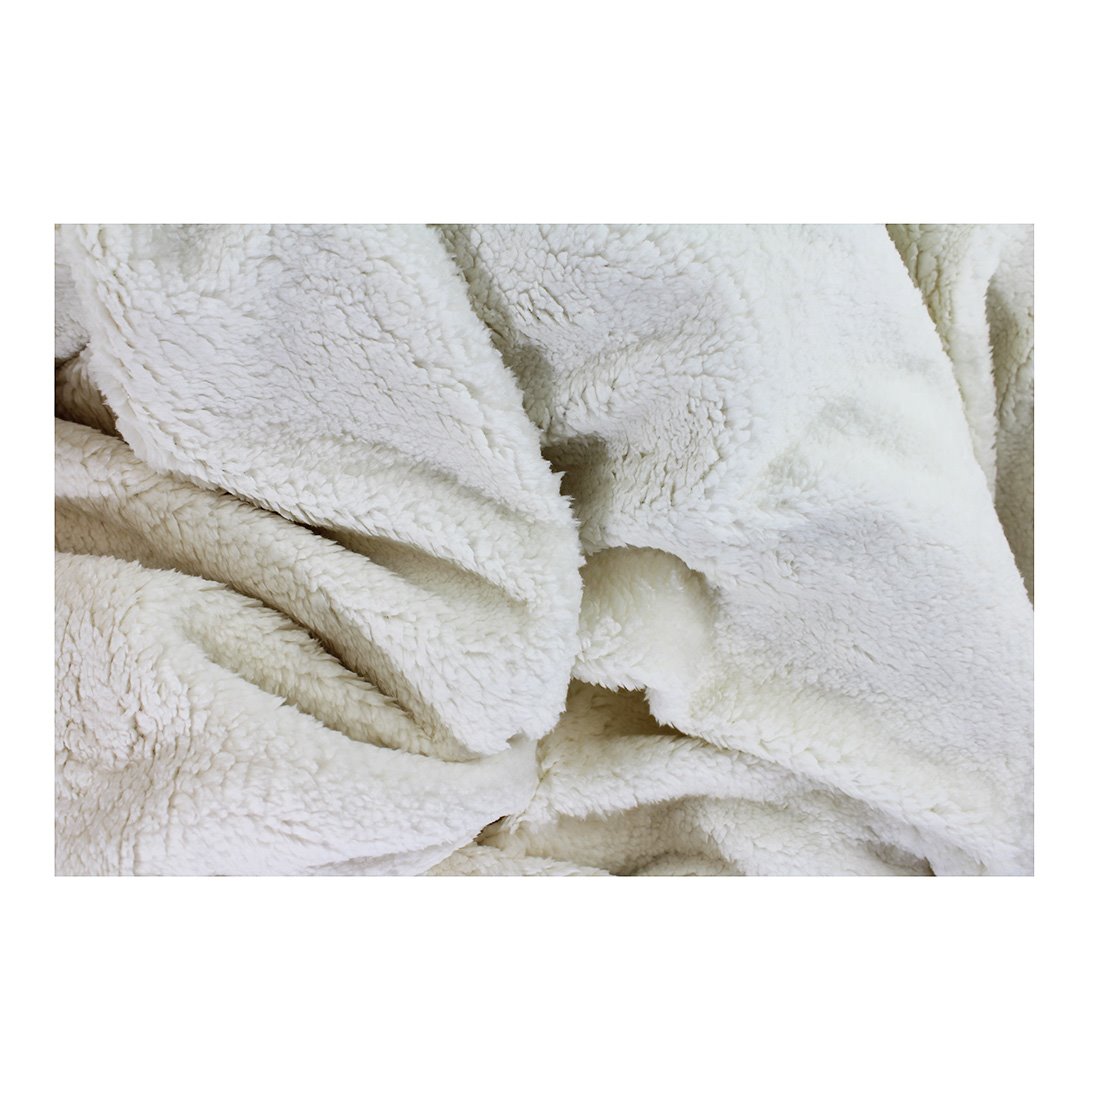 Acomoda Textil - Manta de Sedalina 220x240 cm. Manta Cálida, Transpirable,  Suave y Ligera para Sofá, Cama y Viaje. (Marrón)